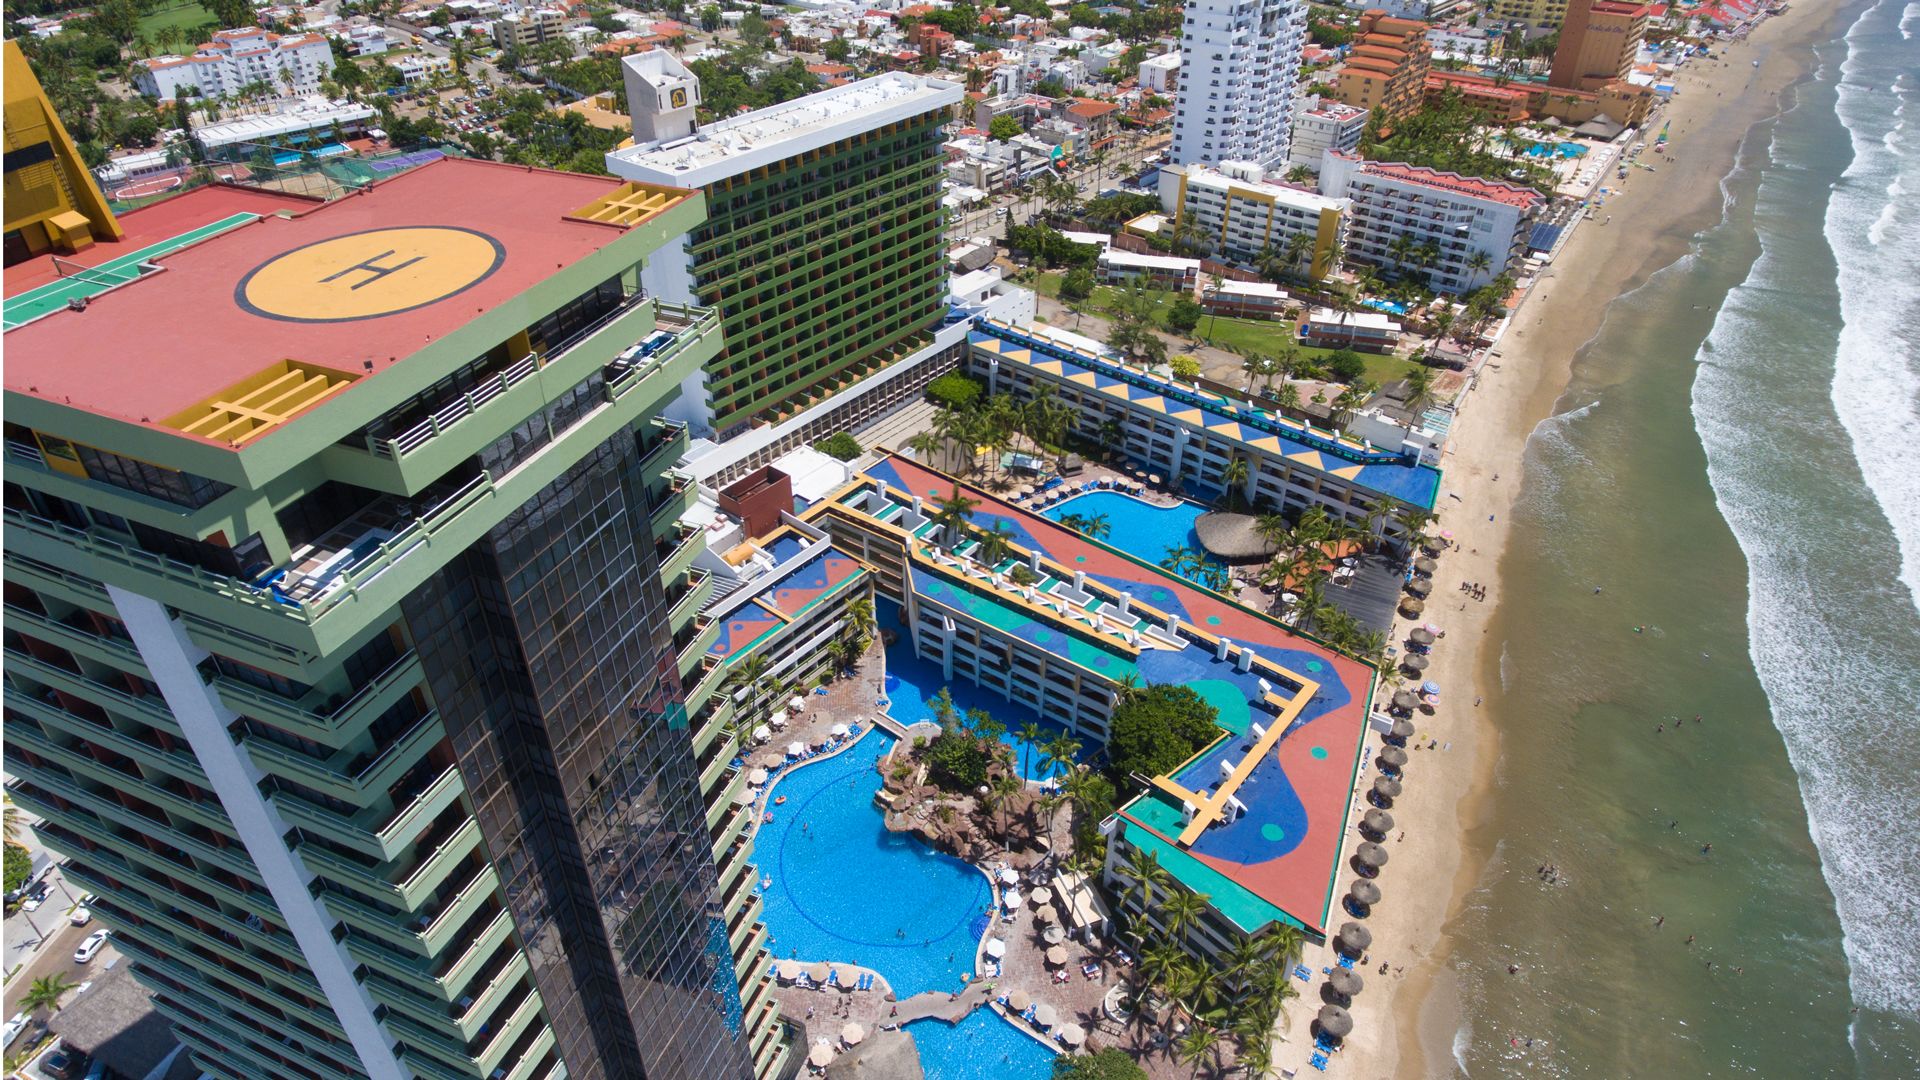 Aerial view of El Cid Resorts in Mazatlán